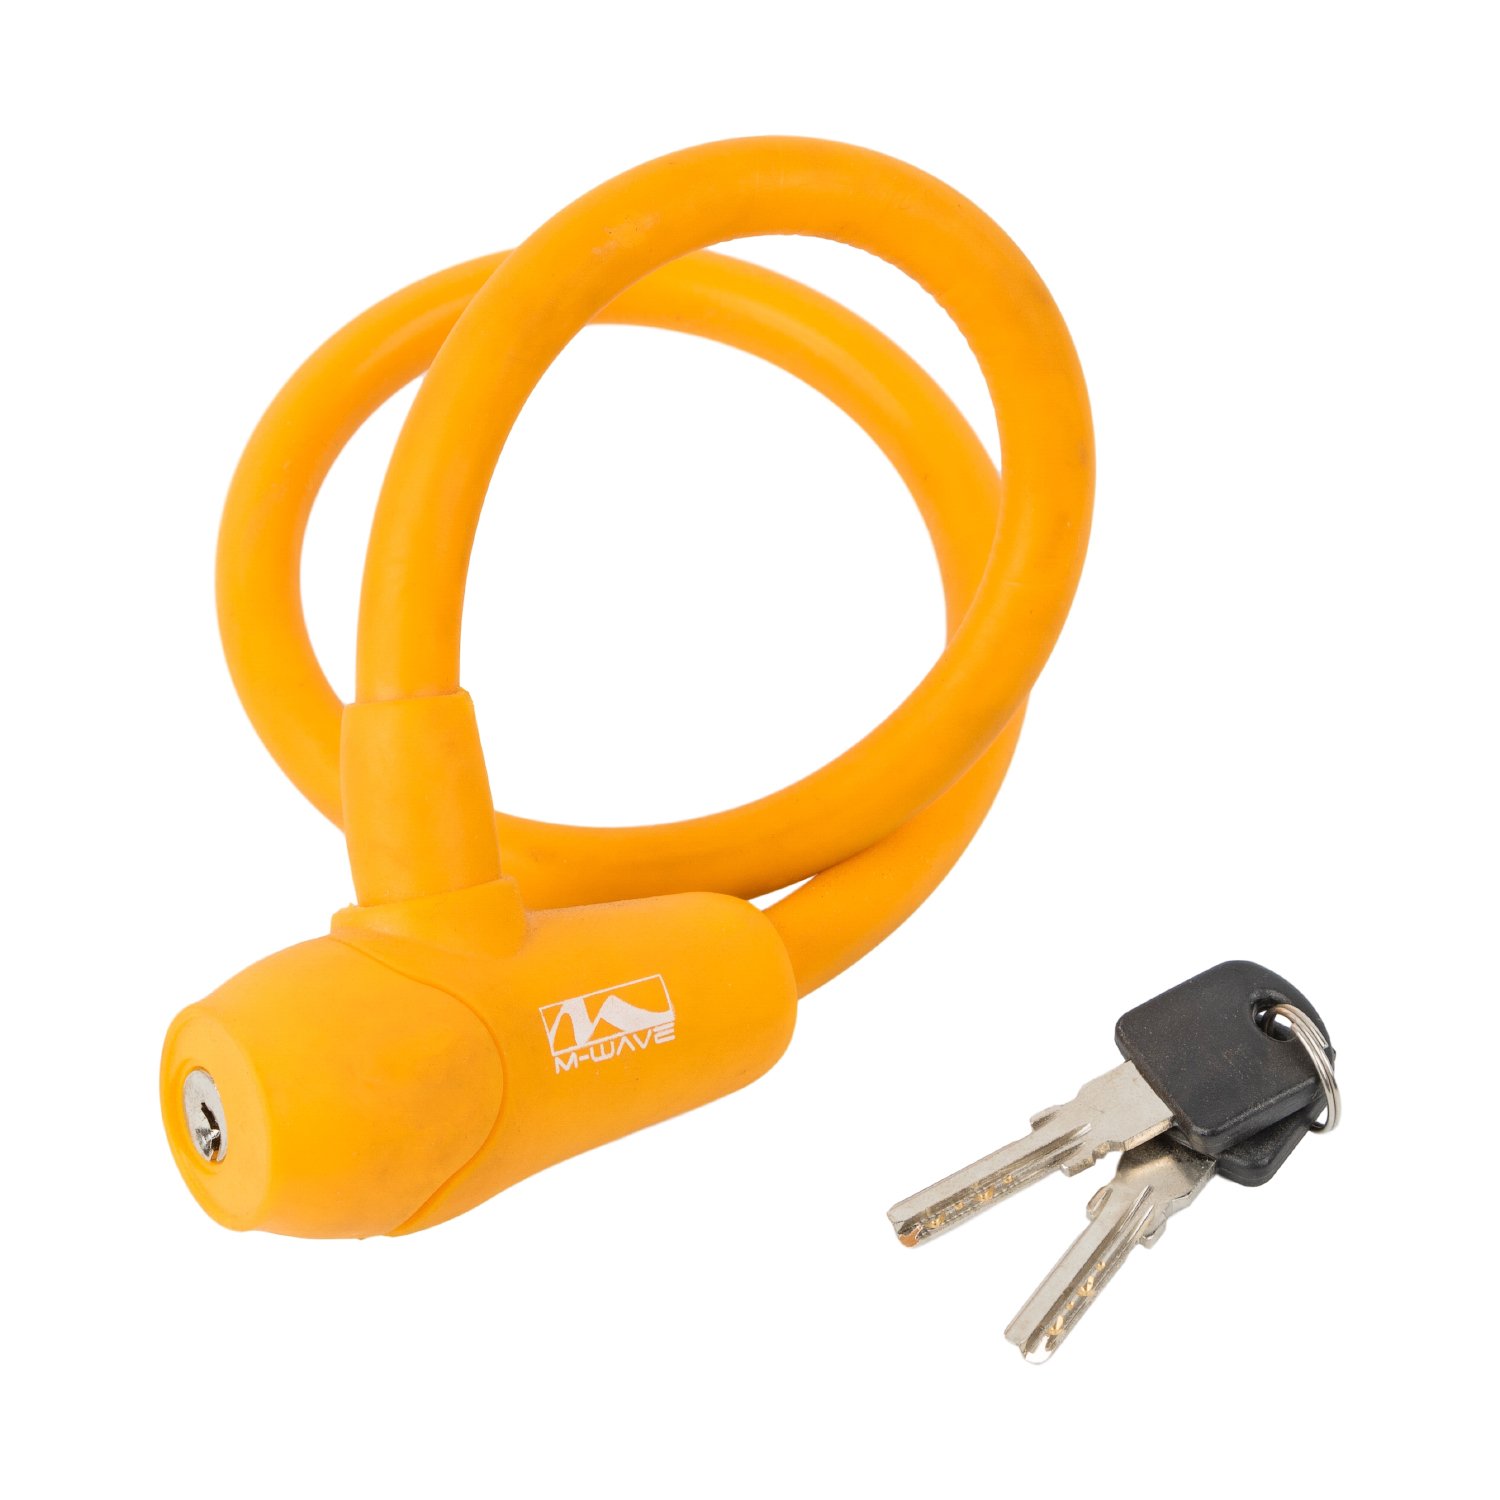 Велосипедный замок M-WAVE, тросовый, на ключ, 12 х 600 мм, оранжевый, 5-231047 велосипедный замок m wave тросовый кодовый ные символы оранжевый 5 231057